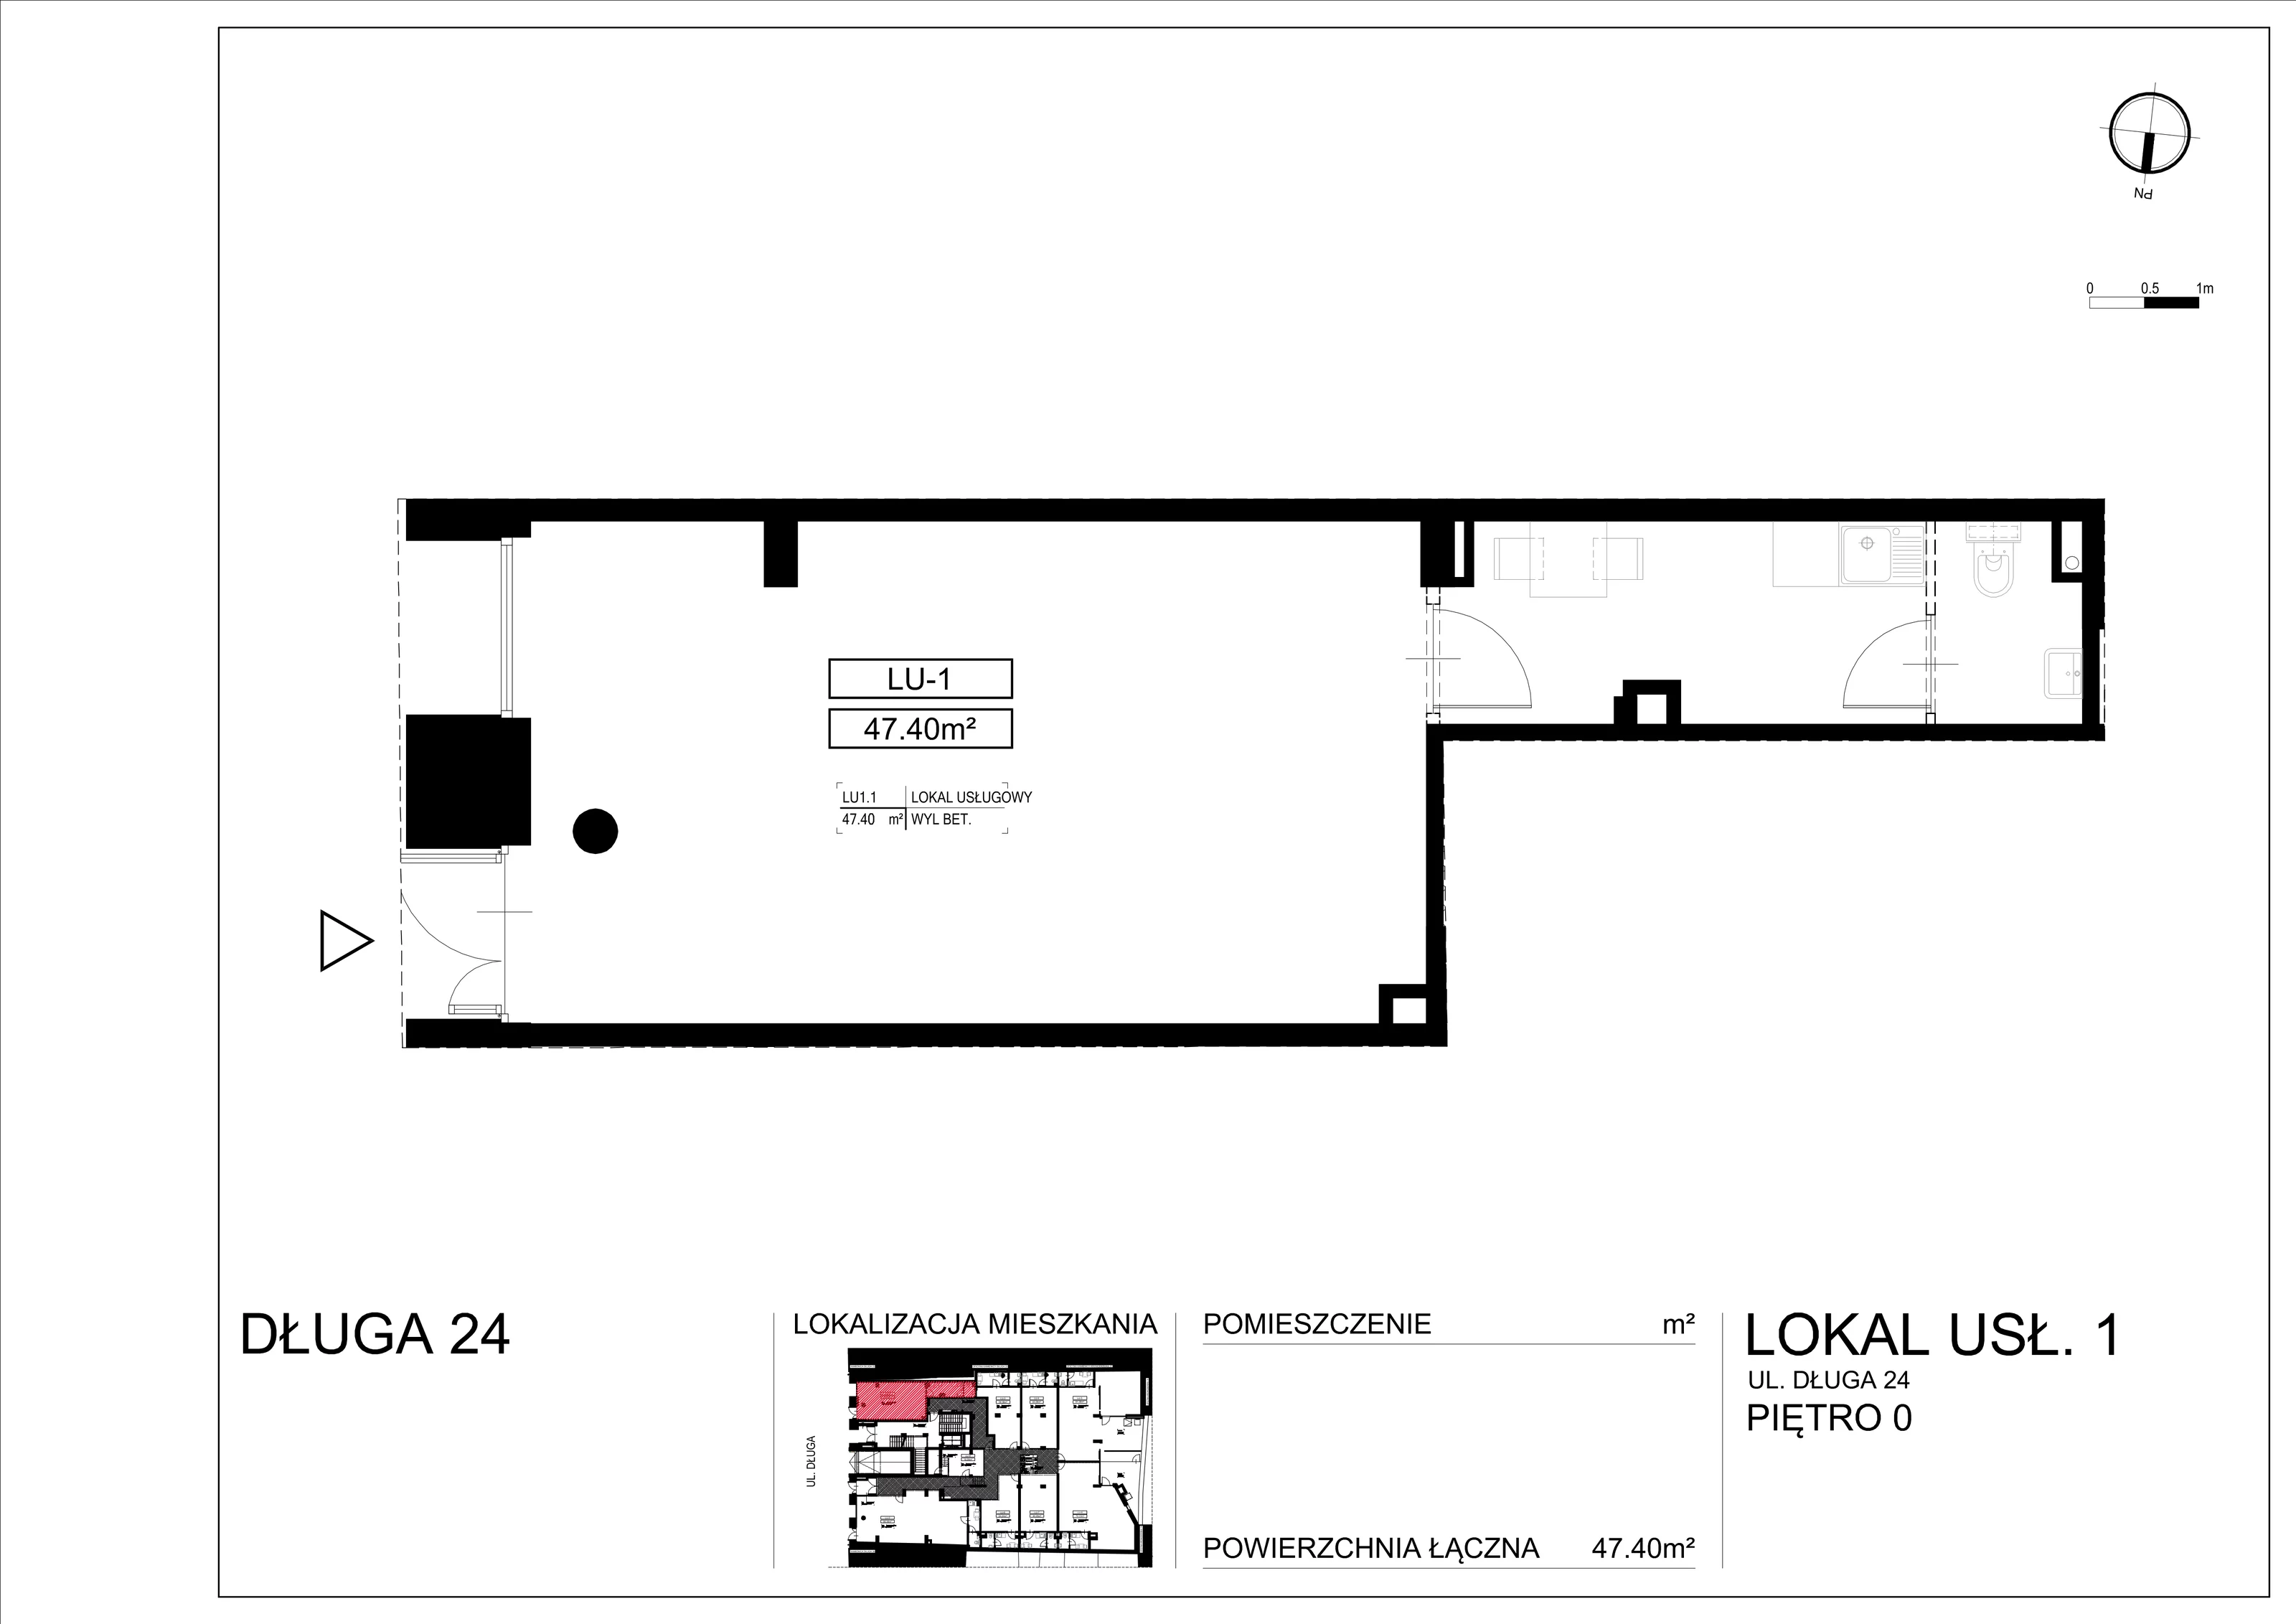 Lokal użytkowy 47,40 m², oferta nr L-1, Długa Residence - lokale użytkowe, Kraków, Stare Miasto, Kleparz, ul. Długa 24